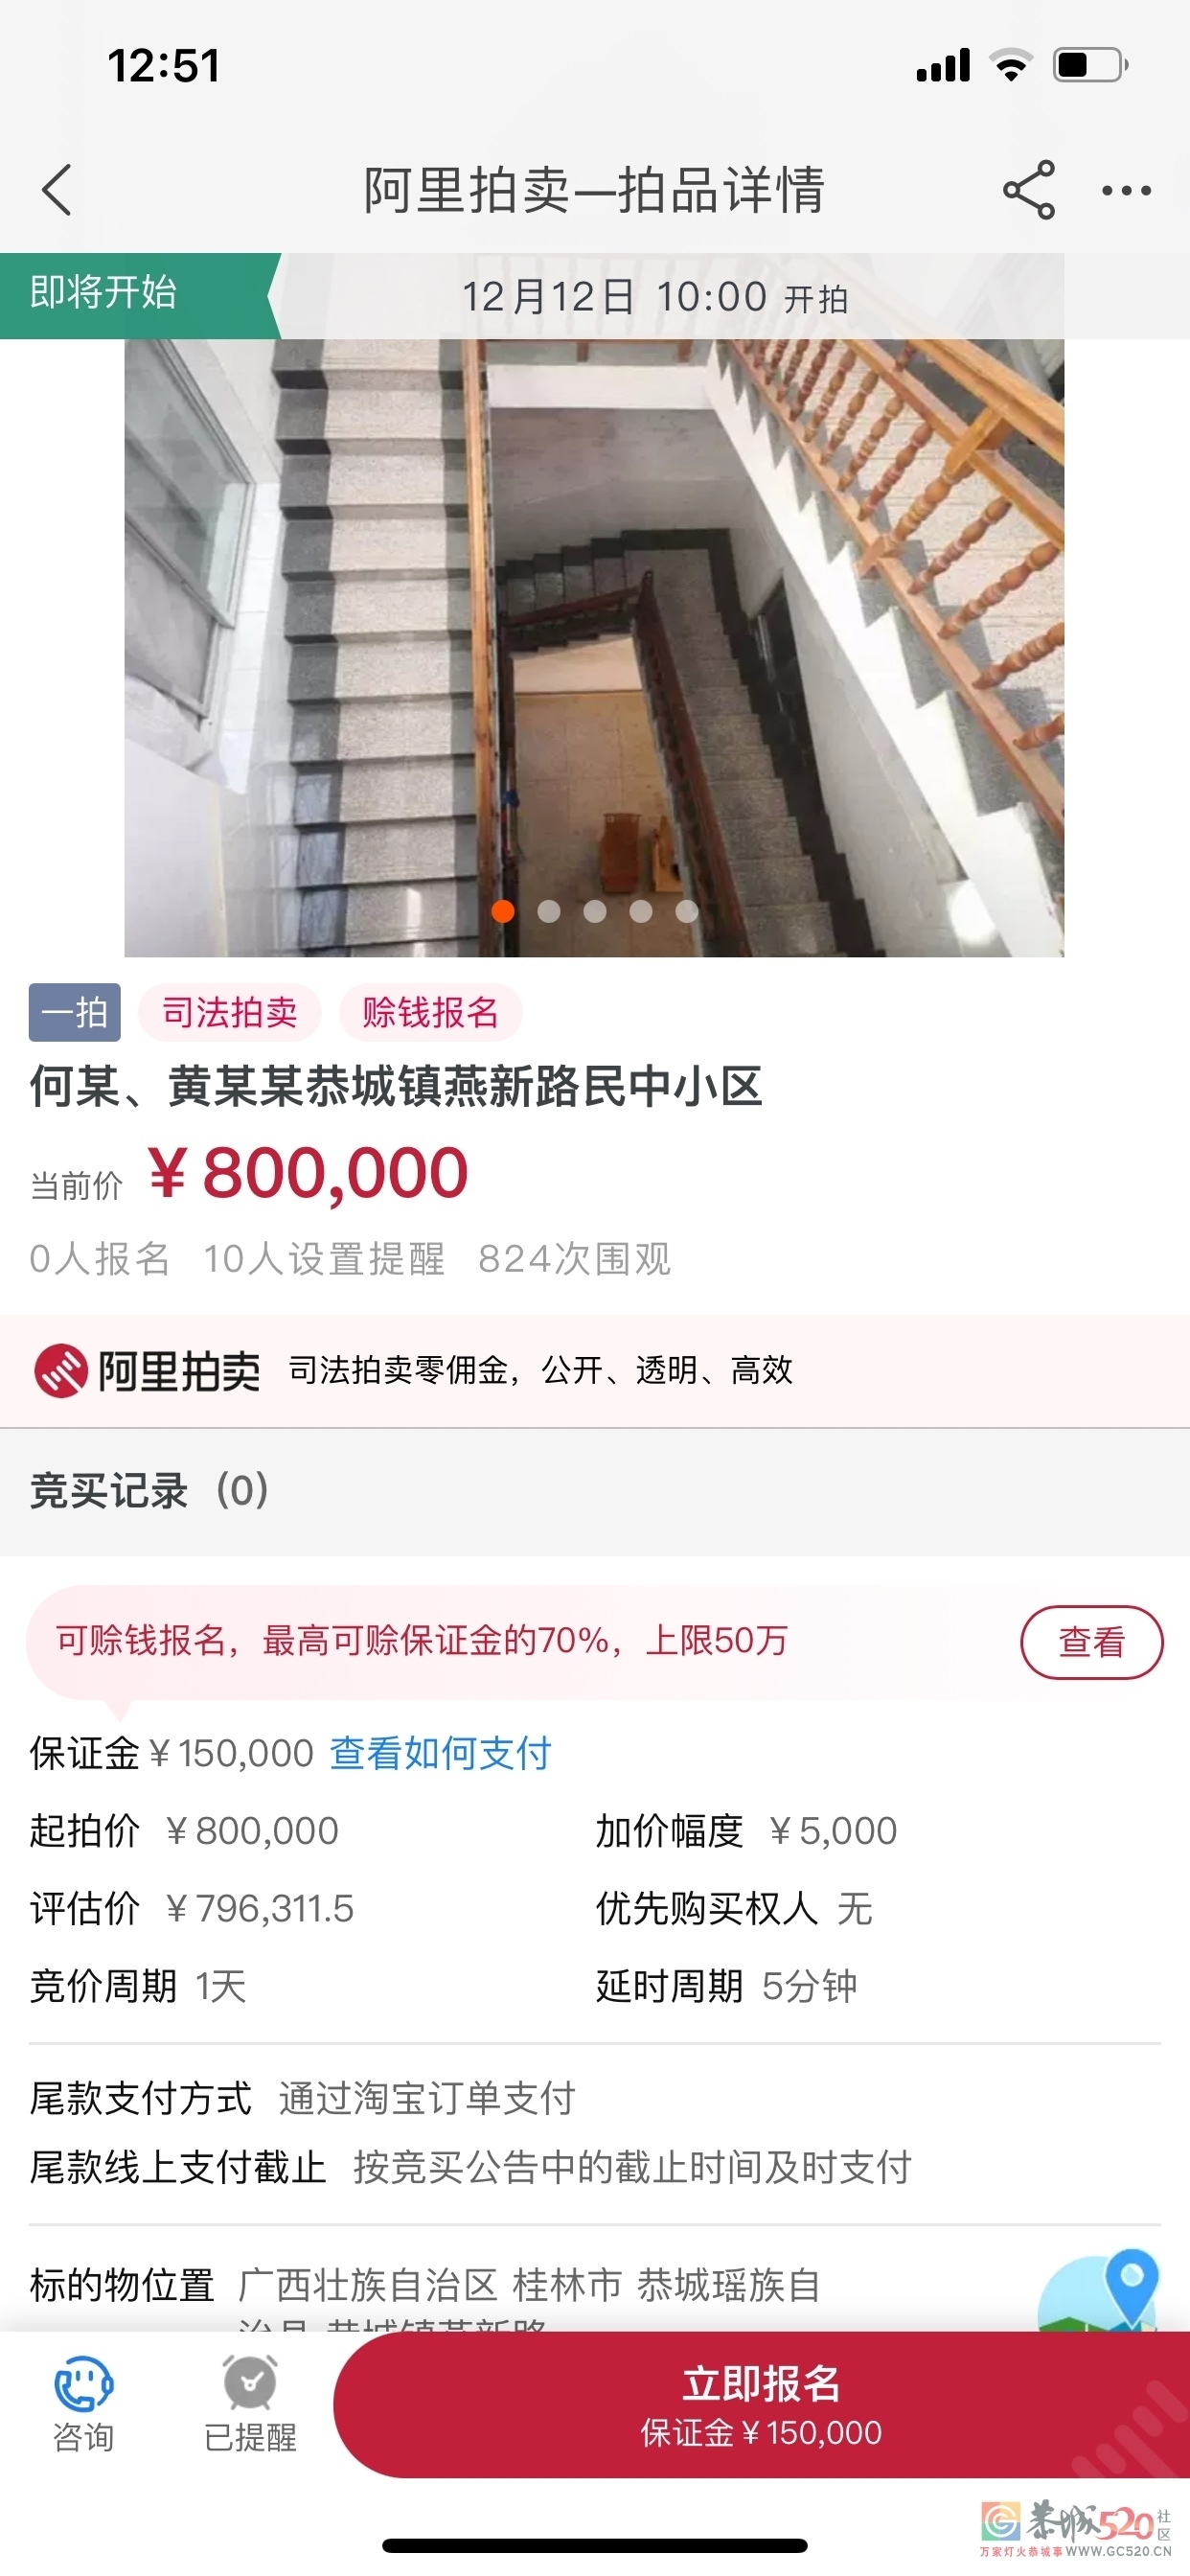 又看见有房子拍卖了956 / 作者:С? / 帖子ID:279586